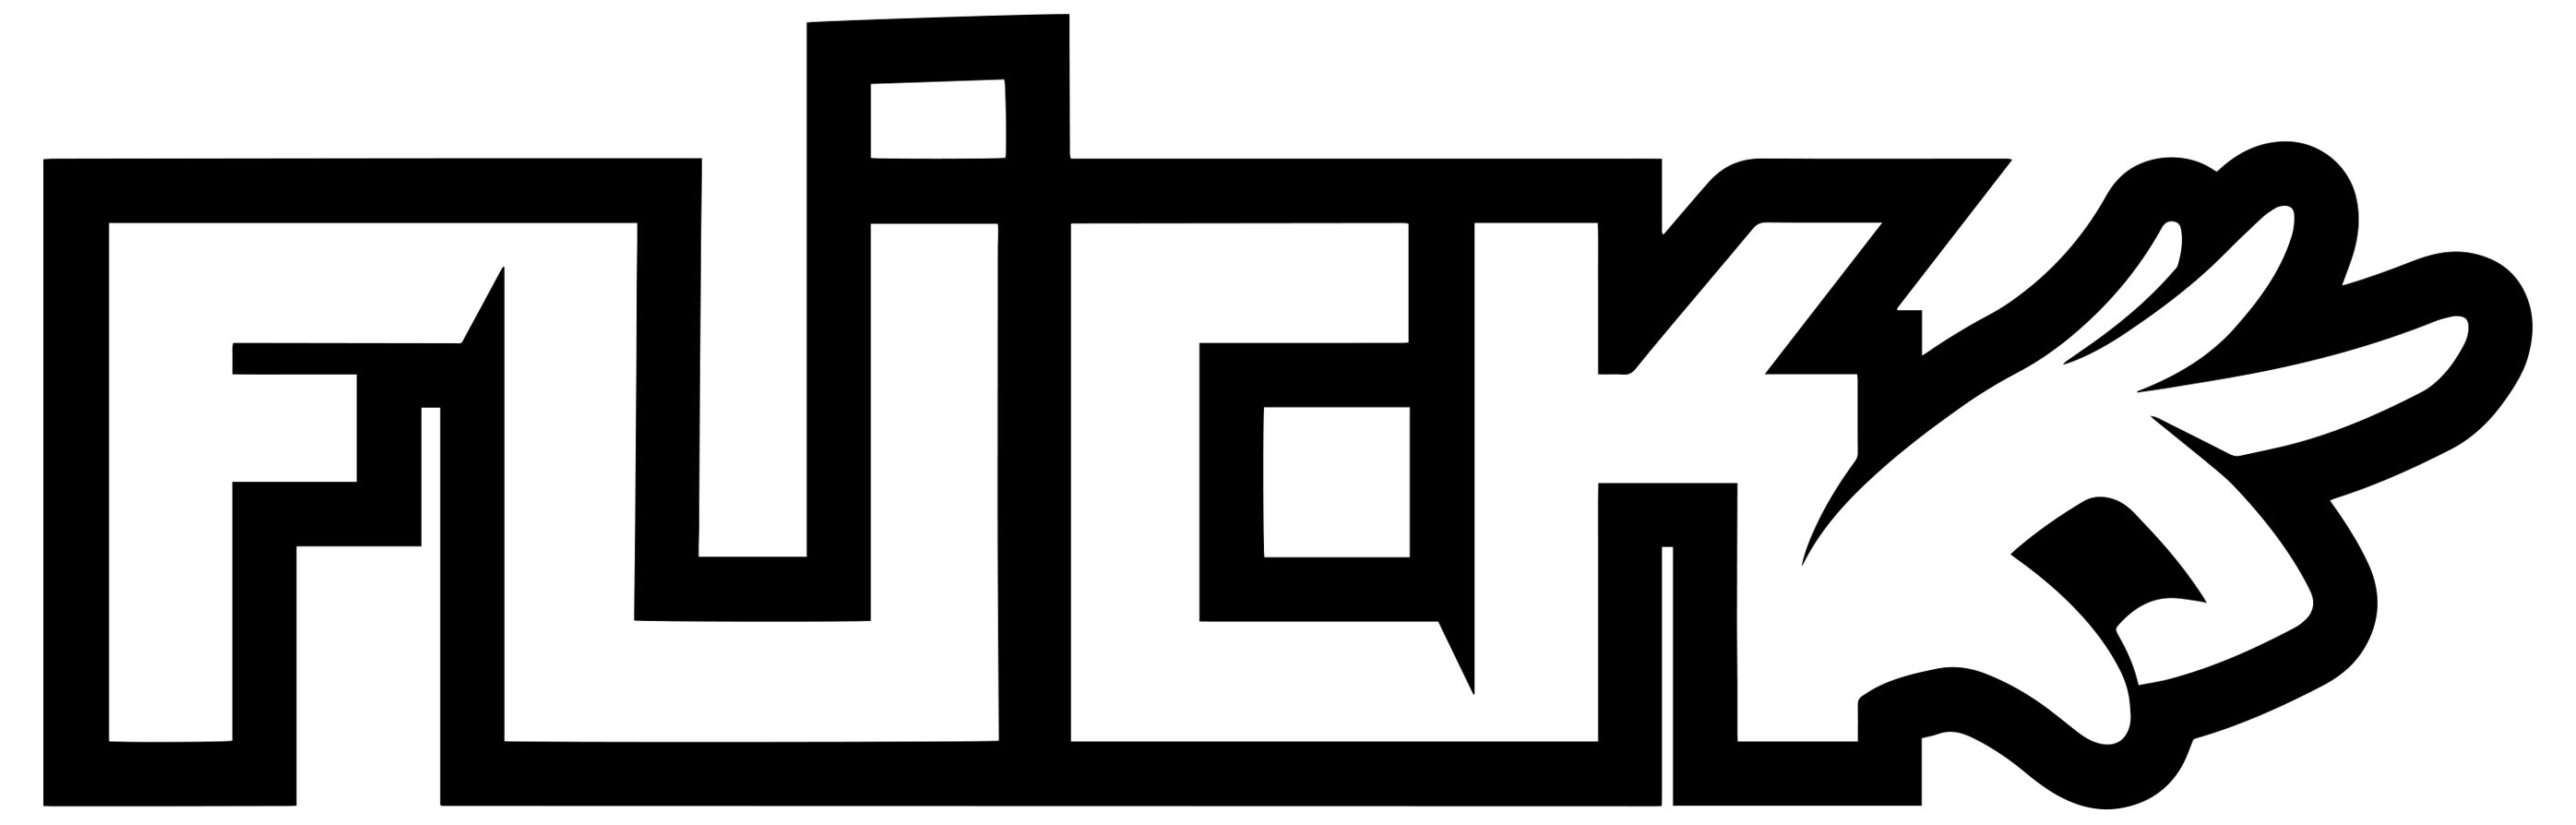 Trademark Logo FLICK